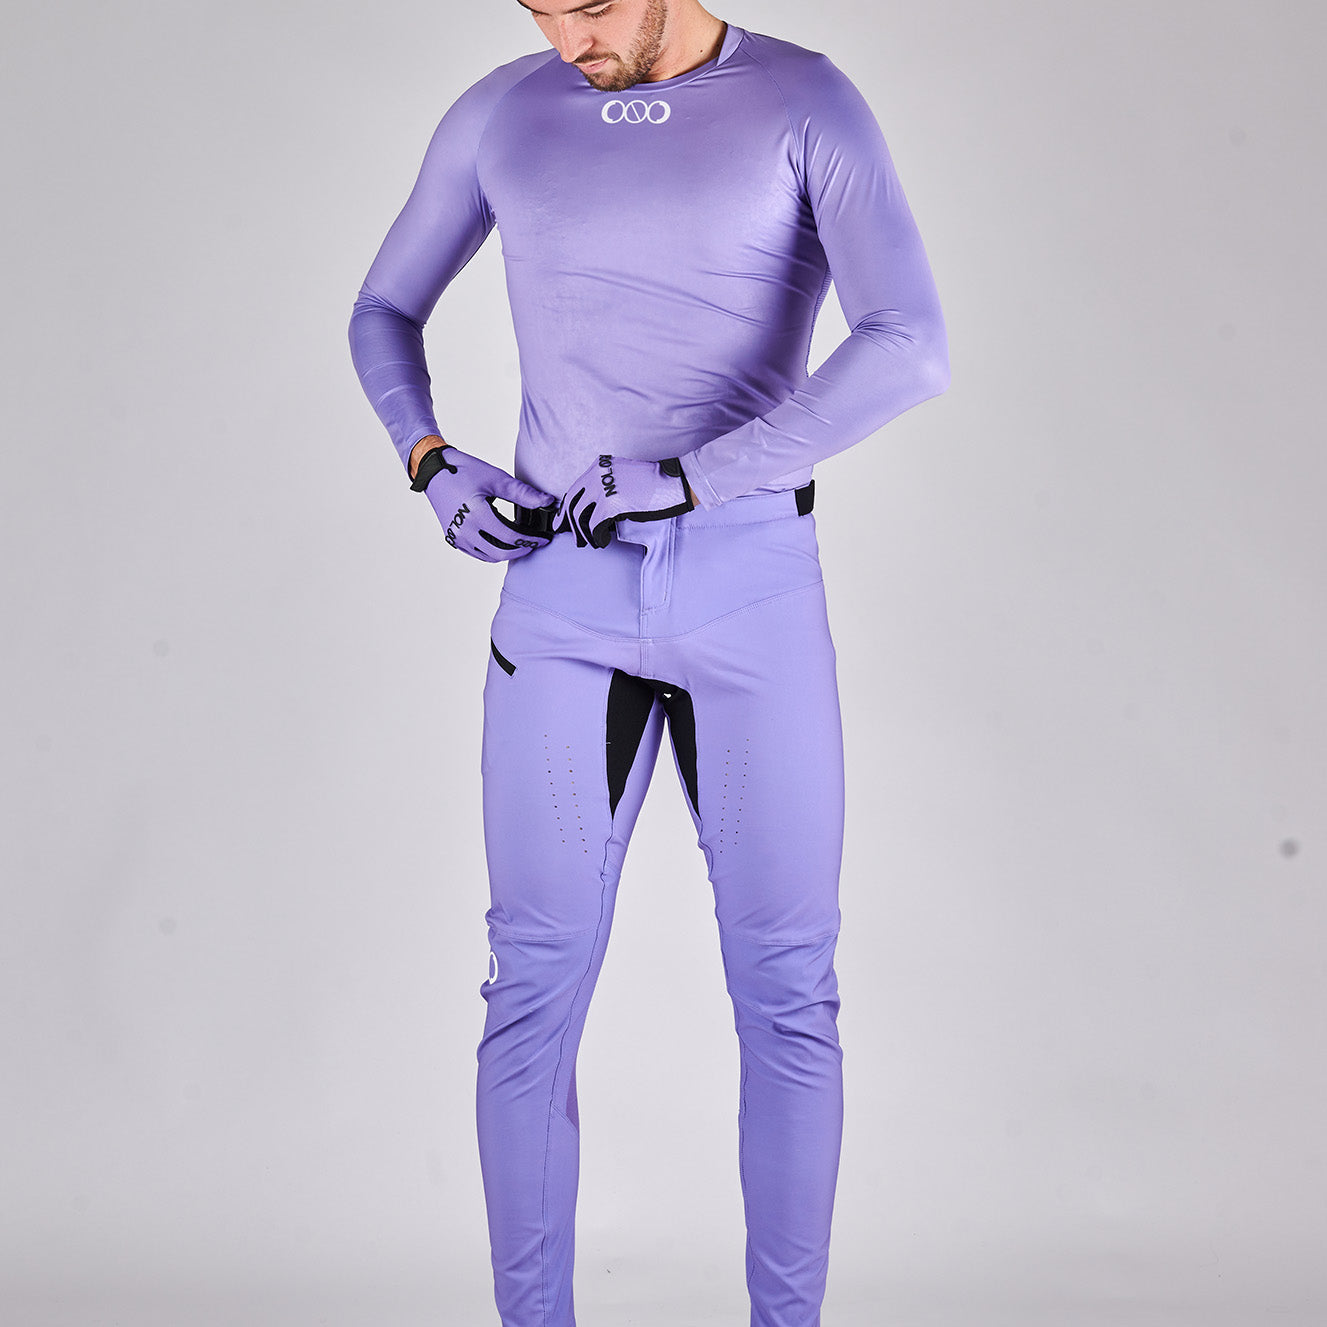 Racer Pants - Pastel Purple